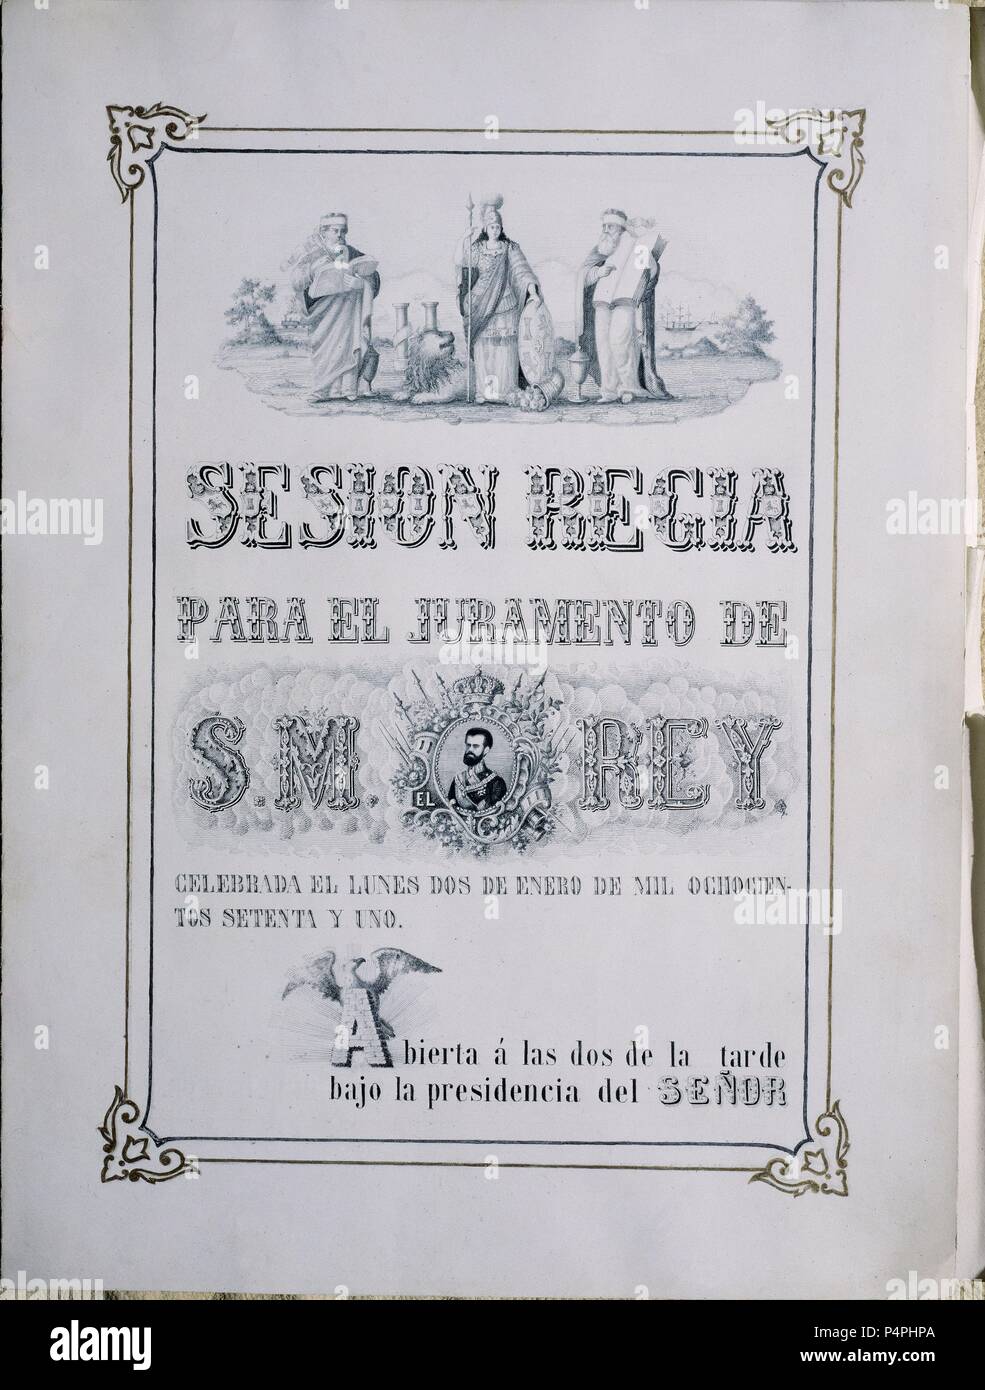 PORTADA DE LA SESION REGIA PARA EL JURAMENTO DE SU MAGESTAD EL REY AMADEO DE SABOYA EL 2 DE ENERO DE 1871. Location: SENADO-BIBLIOTECA-COLECCION, MADRID, SPAIN. Stock Photo